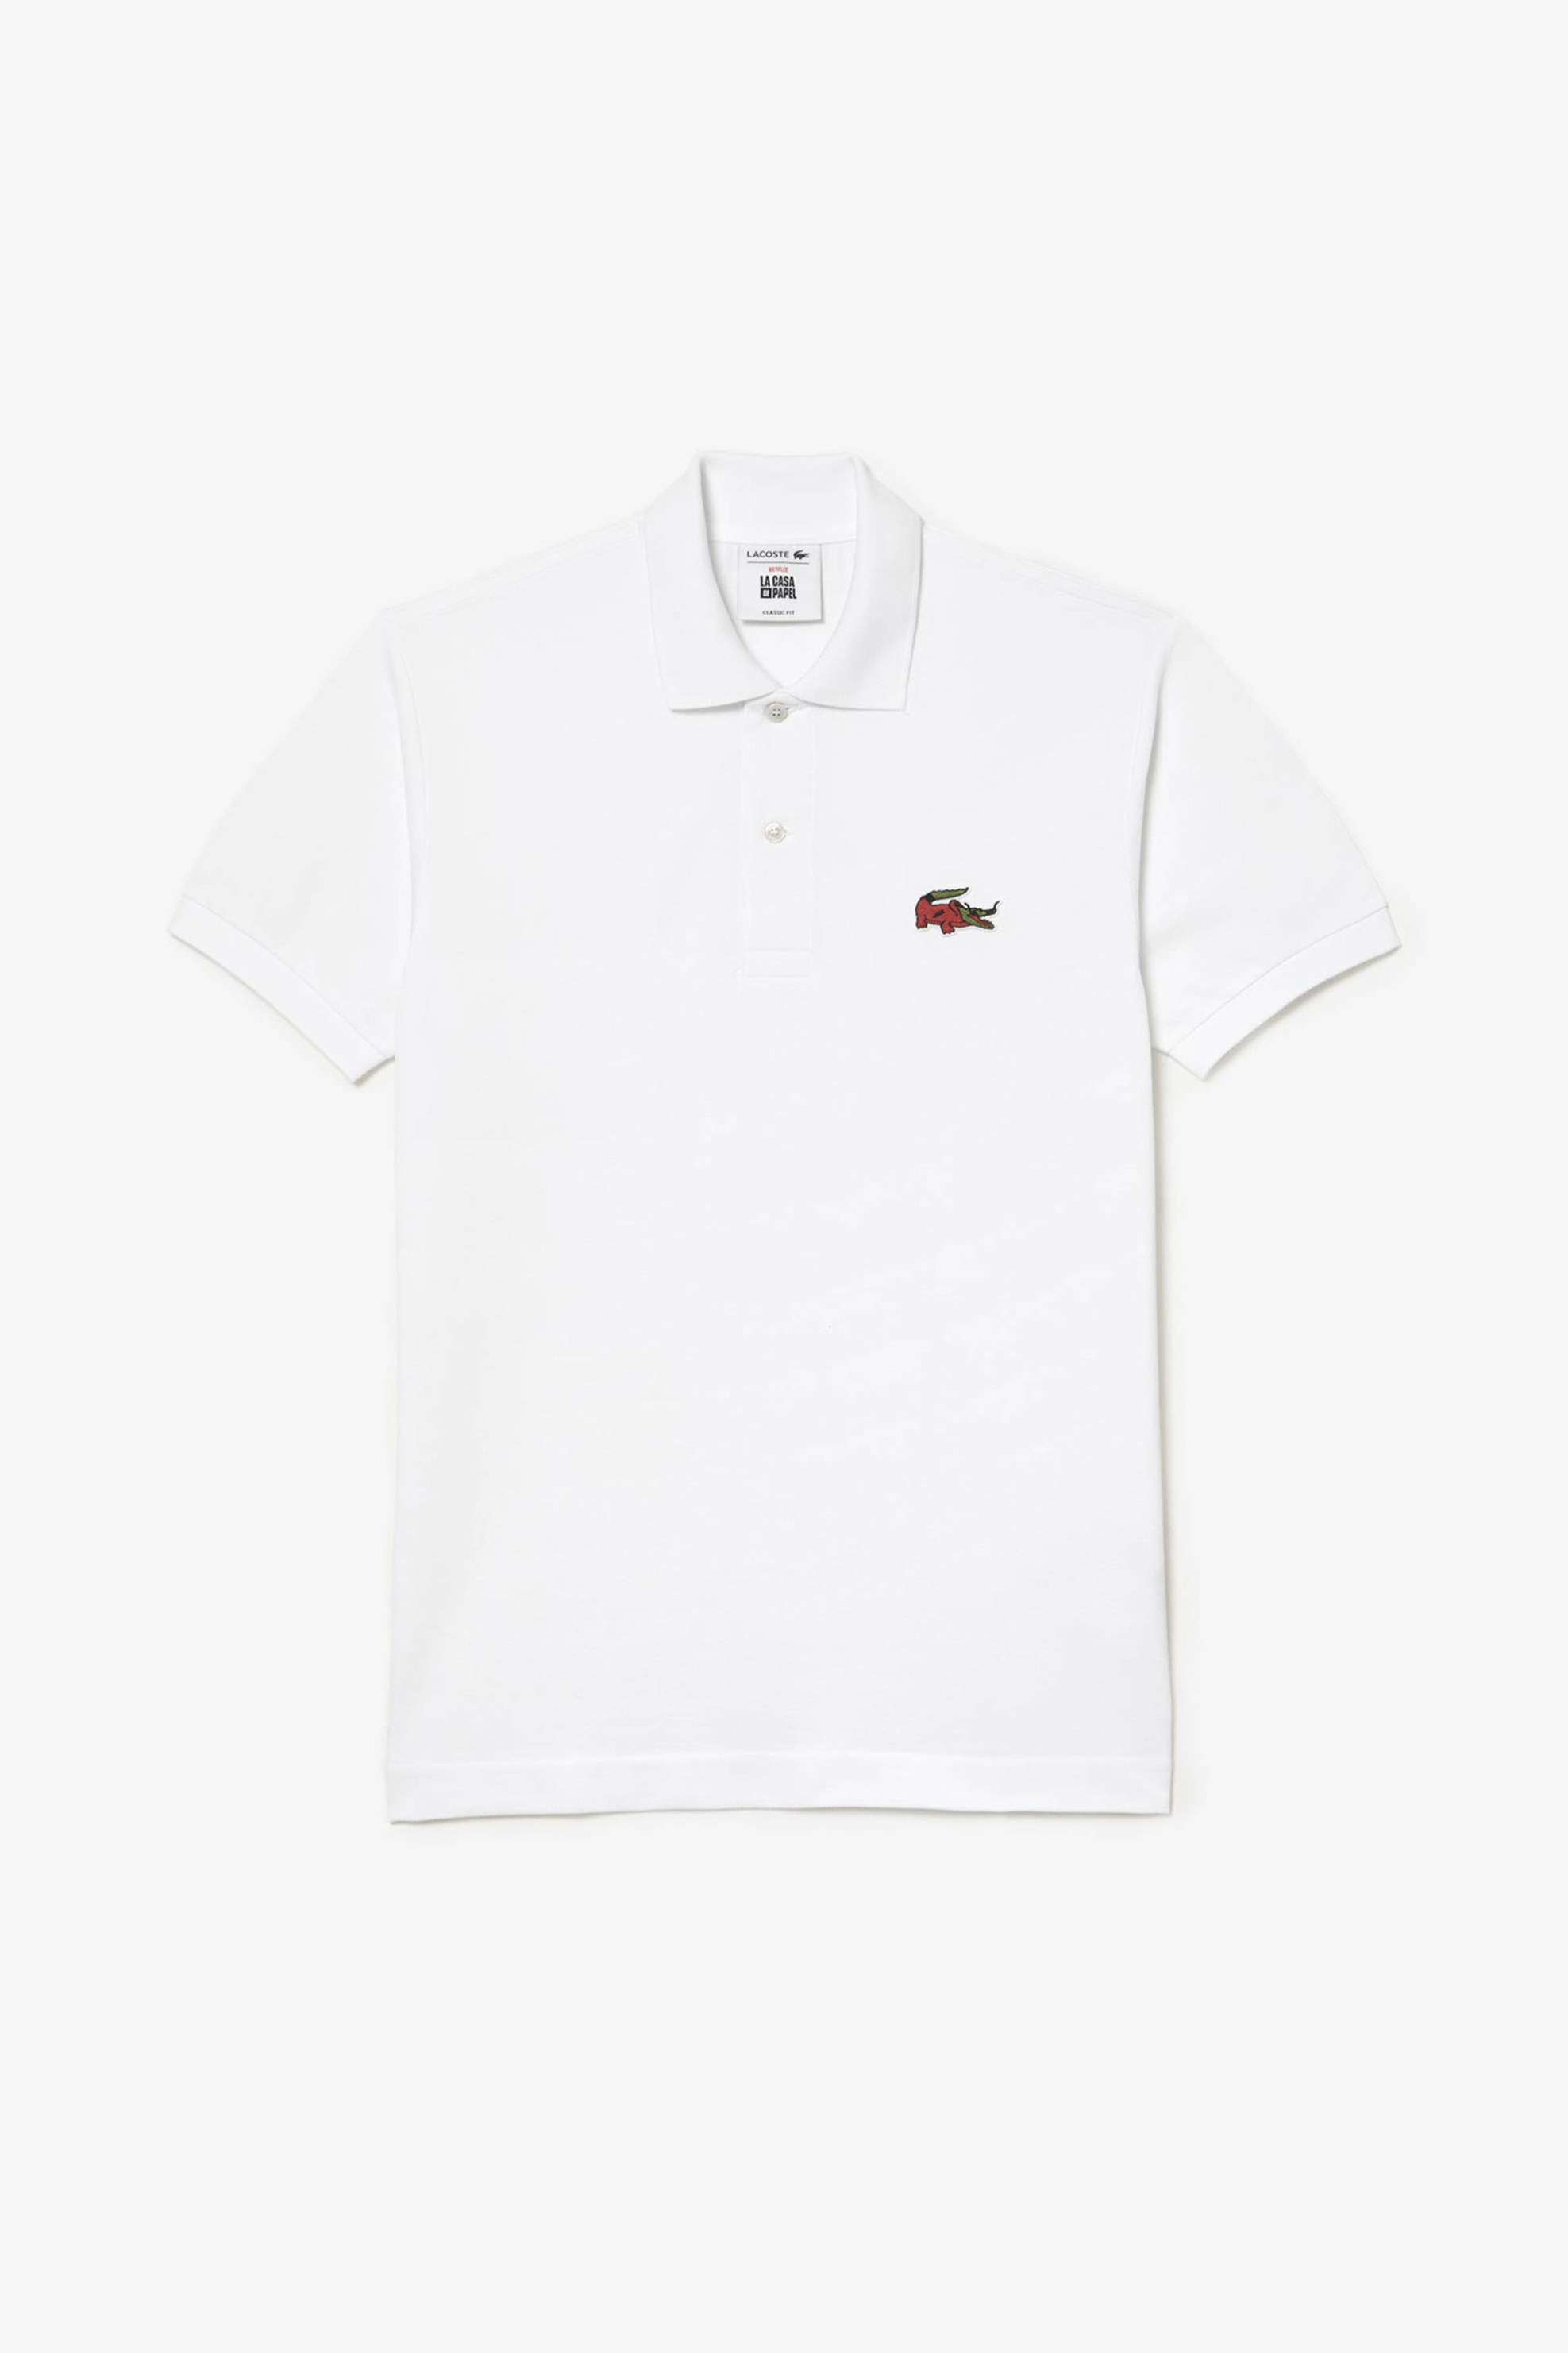 Ανδρική Μόδα > Ανδρικά Ρούχα > Ανδρικές Μπλούζες > Ανδρικές Μπλούζες Πολο Lacoste ανδρική μπλούζα πόλο μονόχρωμη με κεντημένο λογότυπο και κοντό μανίκι "Netflix" - PH7057 Λευκό